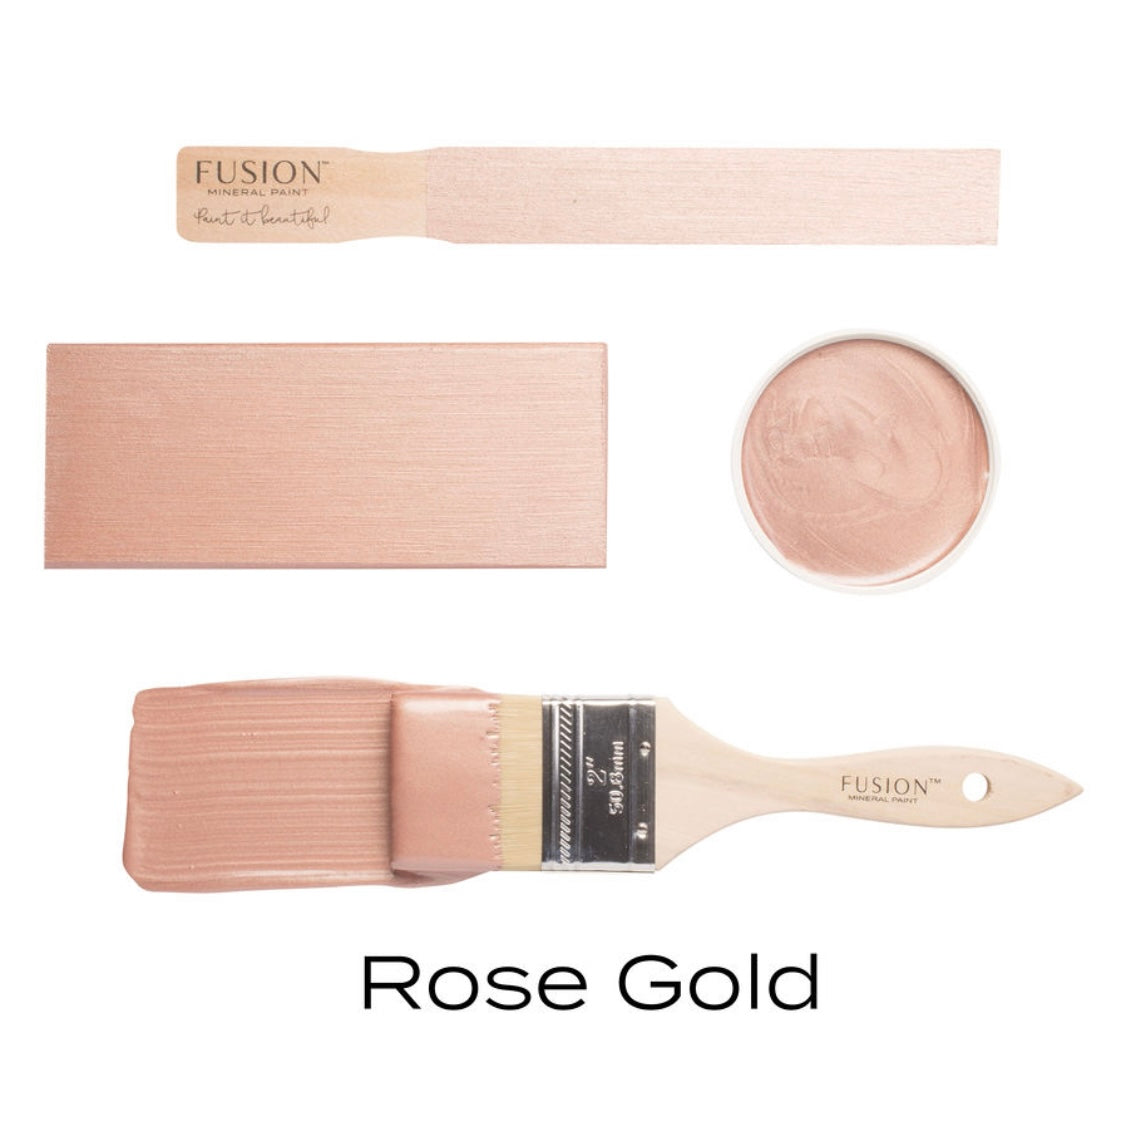 Rose Gold Metallic